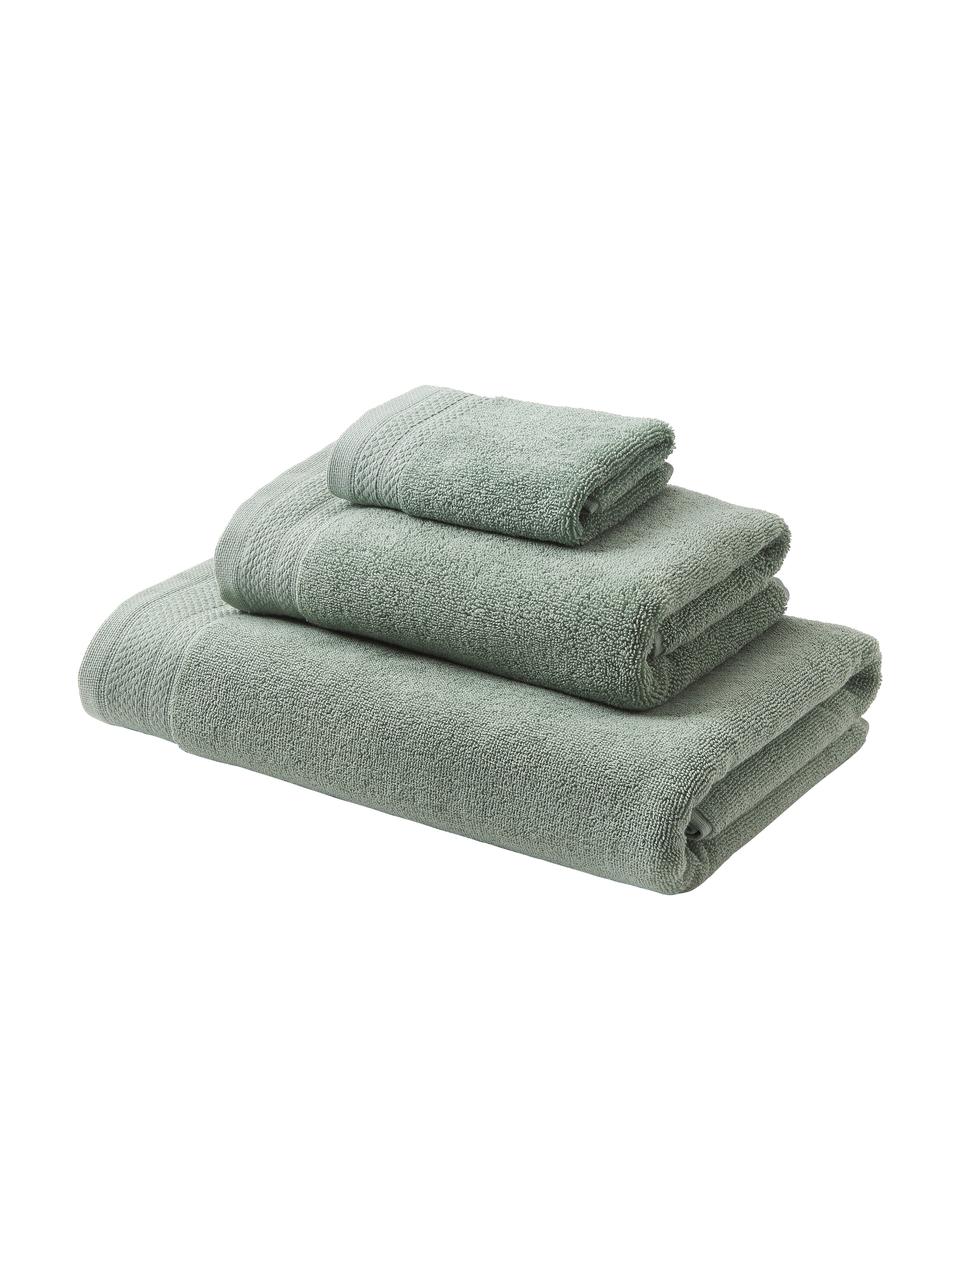 Súprava uterákov z organickej bavlny Premium, 3 diely, Šalviovozelená, Súprava s rôznymi veľkosťami